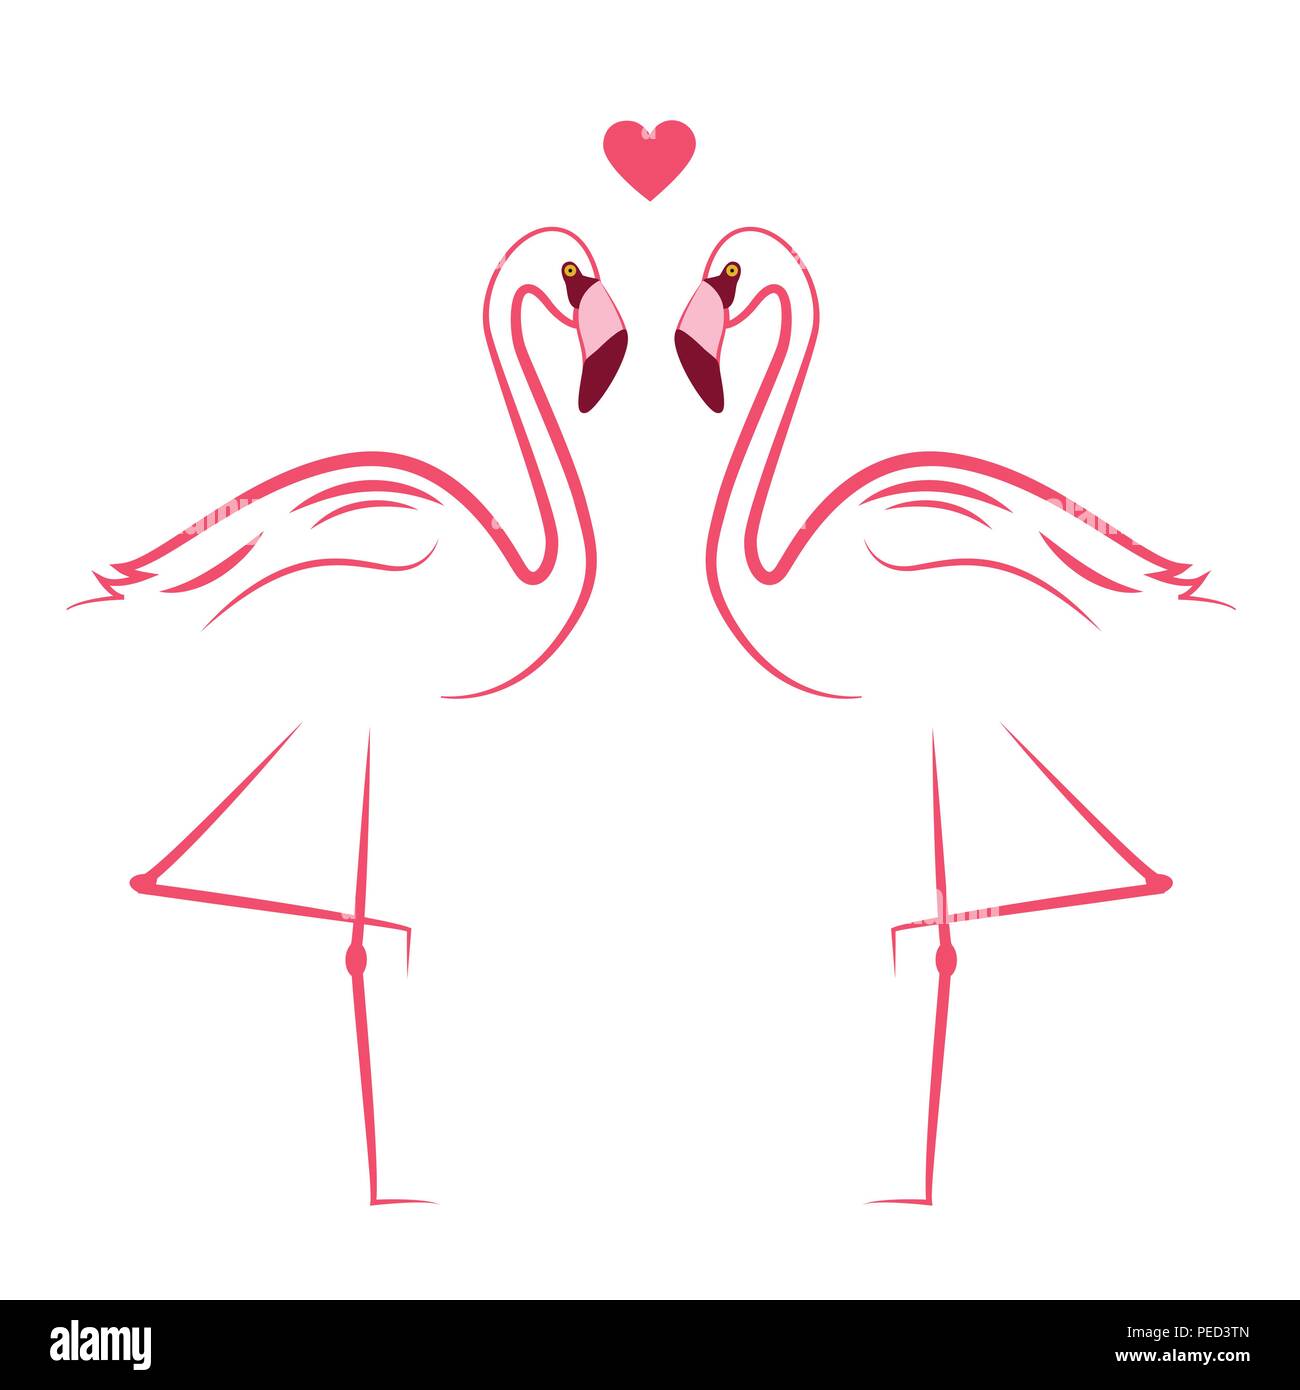 Deux flamants roses dans l'amour simlpe illustration dessin vectoriel EPS10 Illustration de Vecteur